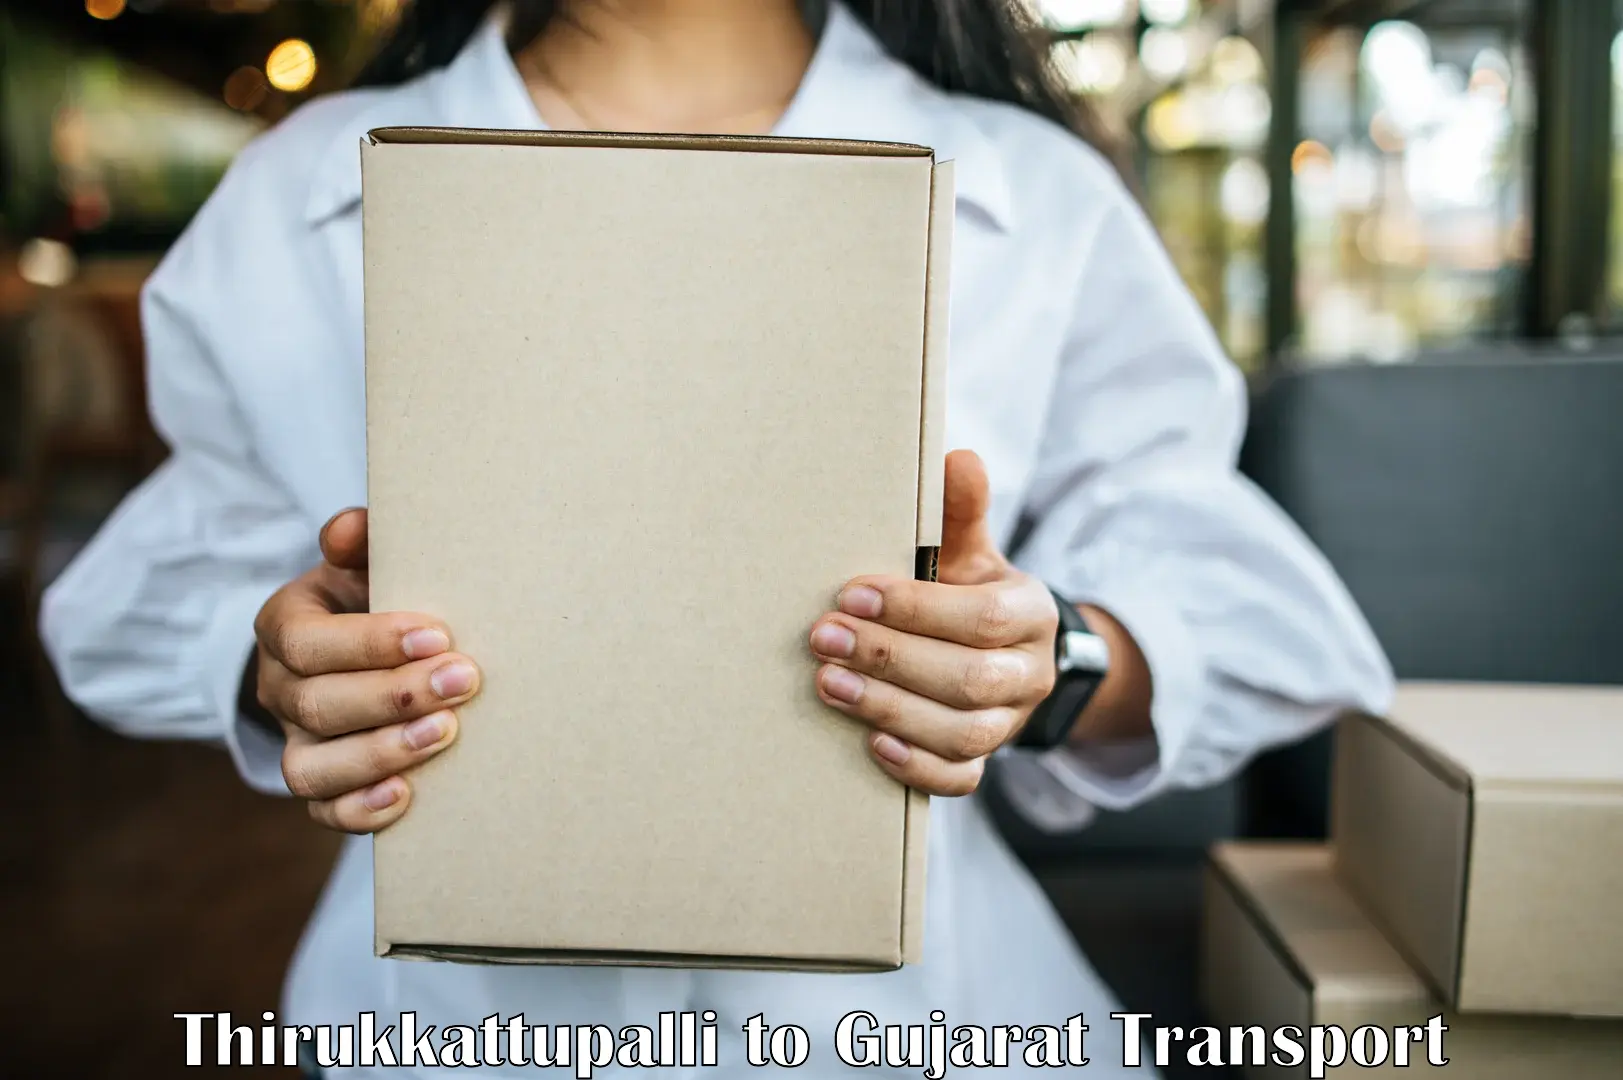 Cargo transportation services Thirukkattupalli to Karjan